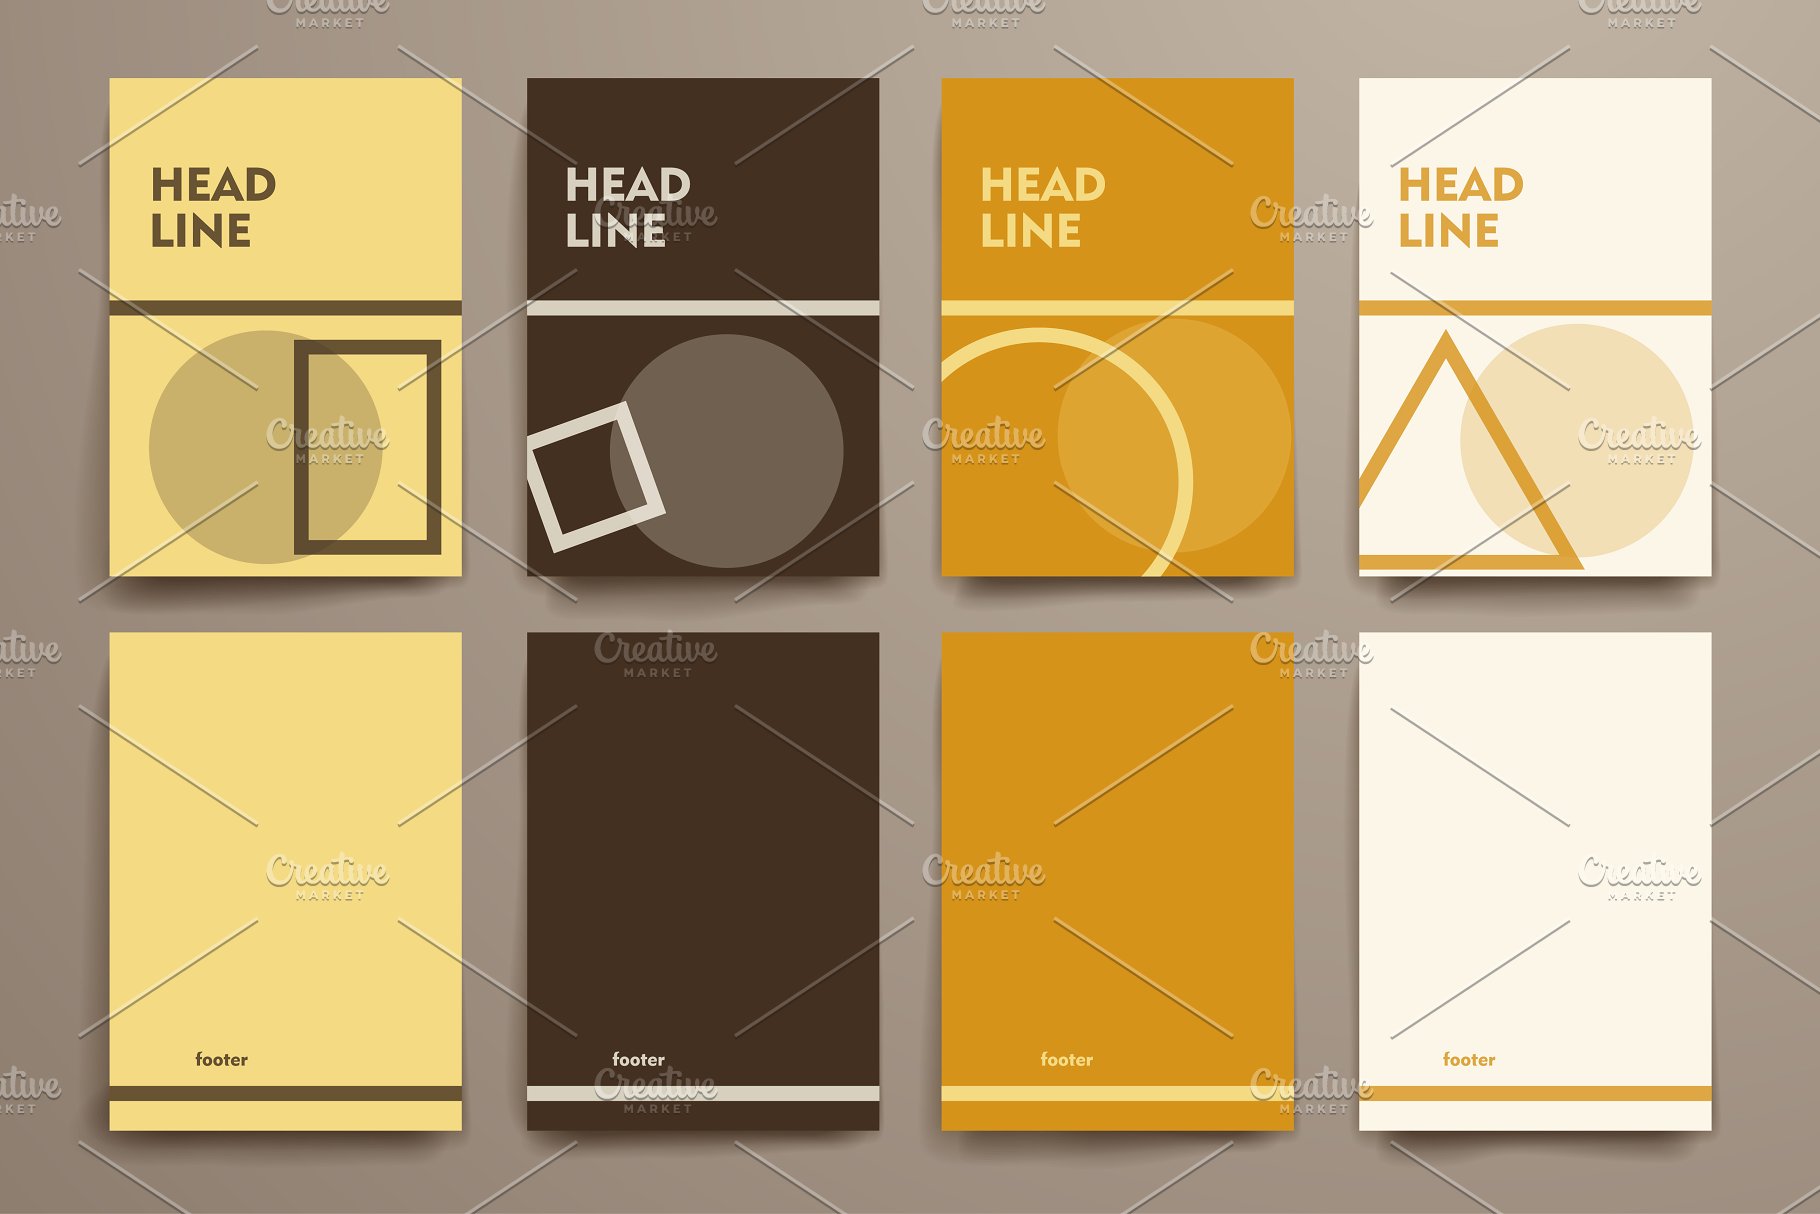 简约小册子传单设计模板 Set of Simple Brochures插图(7)